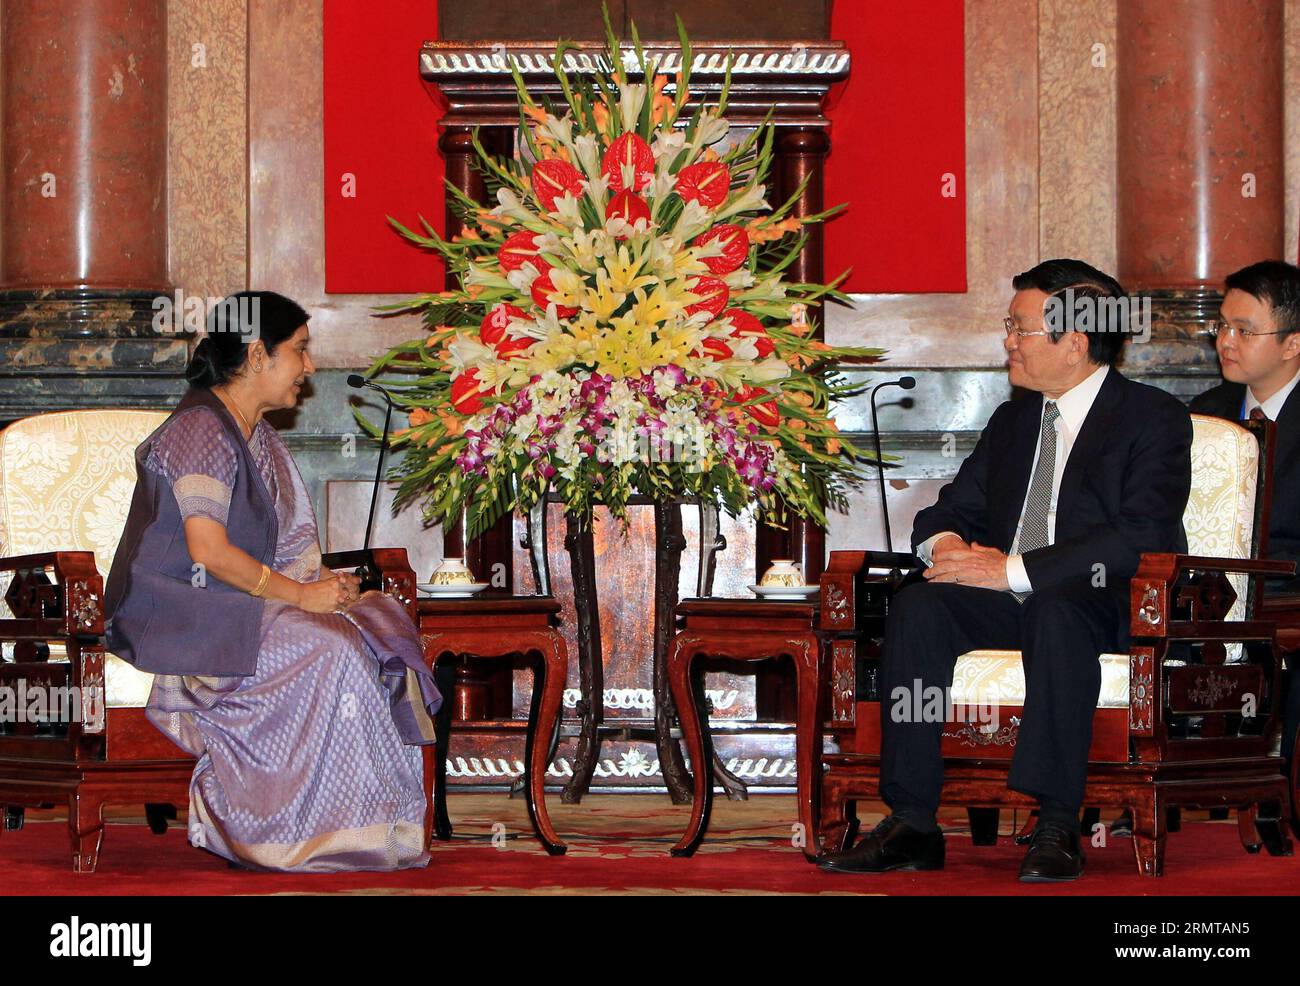 (140825)-- HANOI, 25. August 2014 -- der vietnamesische Präsident Truong Tan Sang (R-Front) schüttelt mit dem indischen Außenminister Sushma Swaraj (L) in Hanoi, der Hauptstadt Vietnams, am 25. August 2014 die Hände. Sushma Swaraj sagte hier am Montag, dass sie von Indien und Vietnam erwarte, dass sie die bilateralen Handels- und Investitionseinnahmen gegenüber dem derzeitigen Niveau verdoppeln oder verdreifachen. ) VIETNAM-HANOI-INDIEN-TREFFEN VNA PUBLICATIONxNOTxINxCHN Hanoi August 25 2014 der vietnamesische Präsident Truong TAN sang r Front schüttelt Hände mit den indischen Außenministern Sushma Swaraj l in Hanoi, der Hauptstadt Vietnams, August 25 2014 Sushma Swaraj Stockfoto